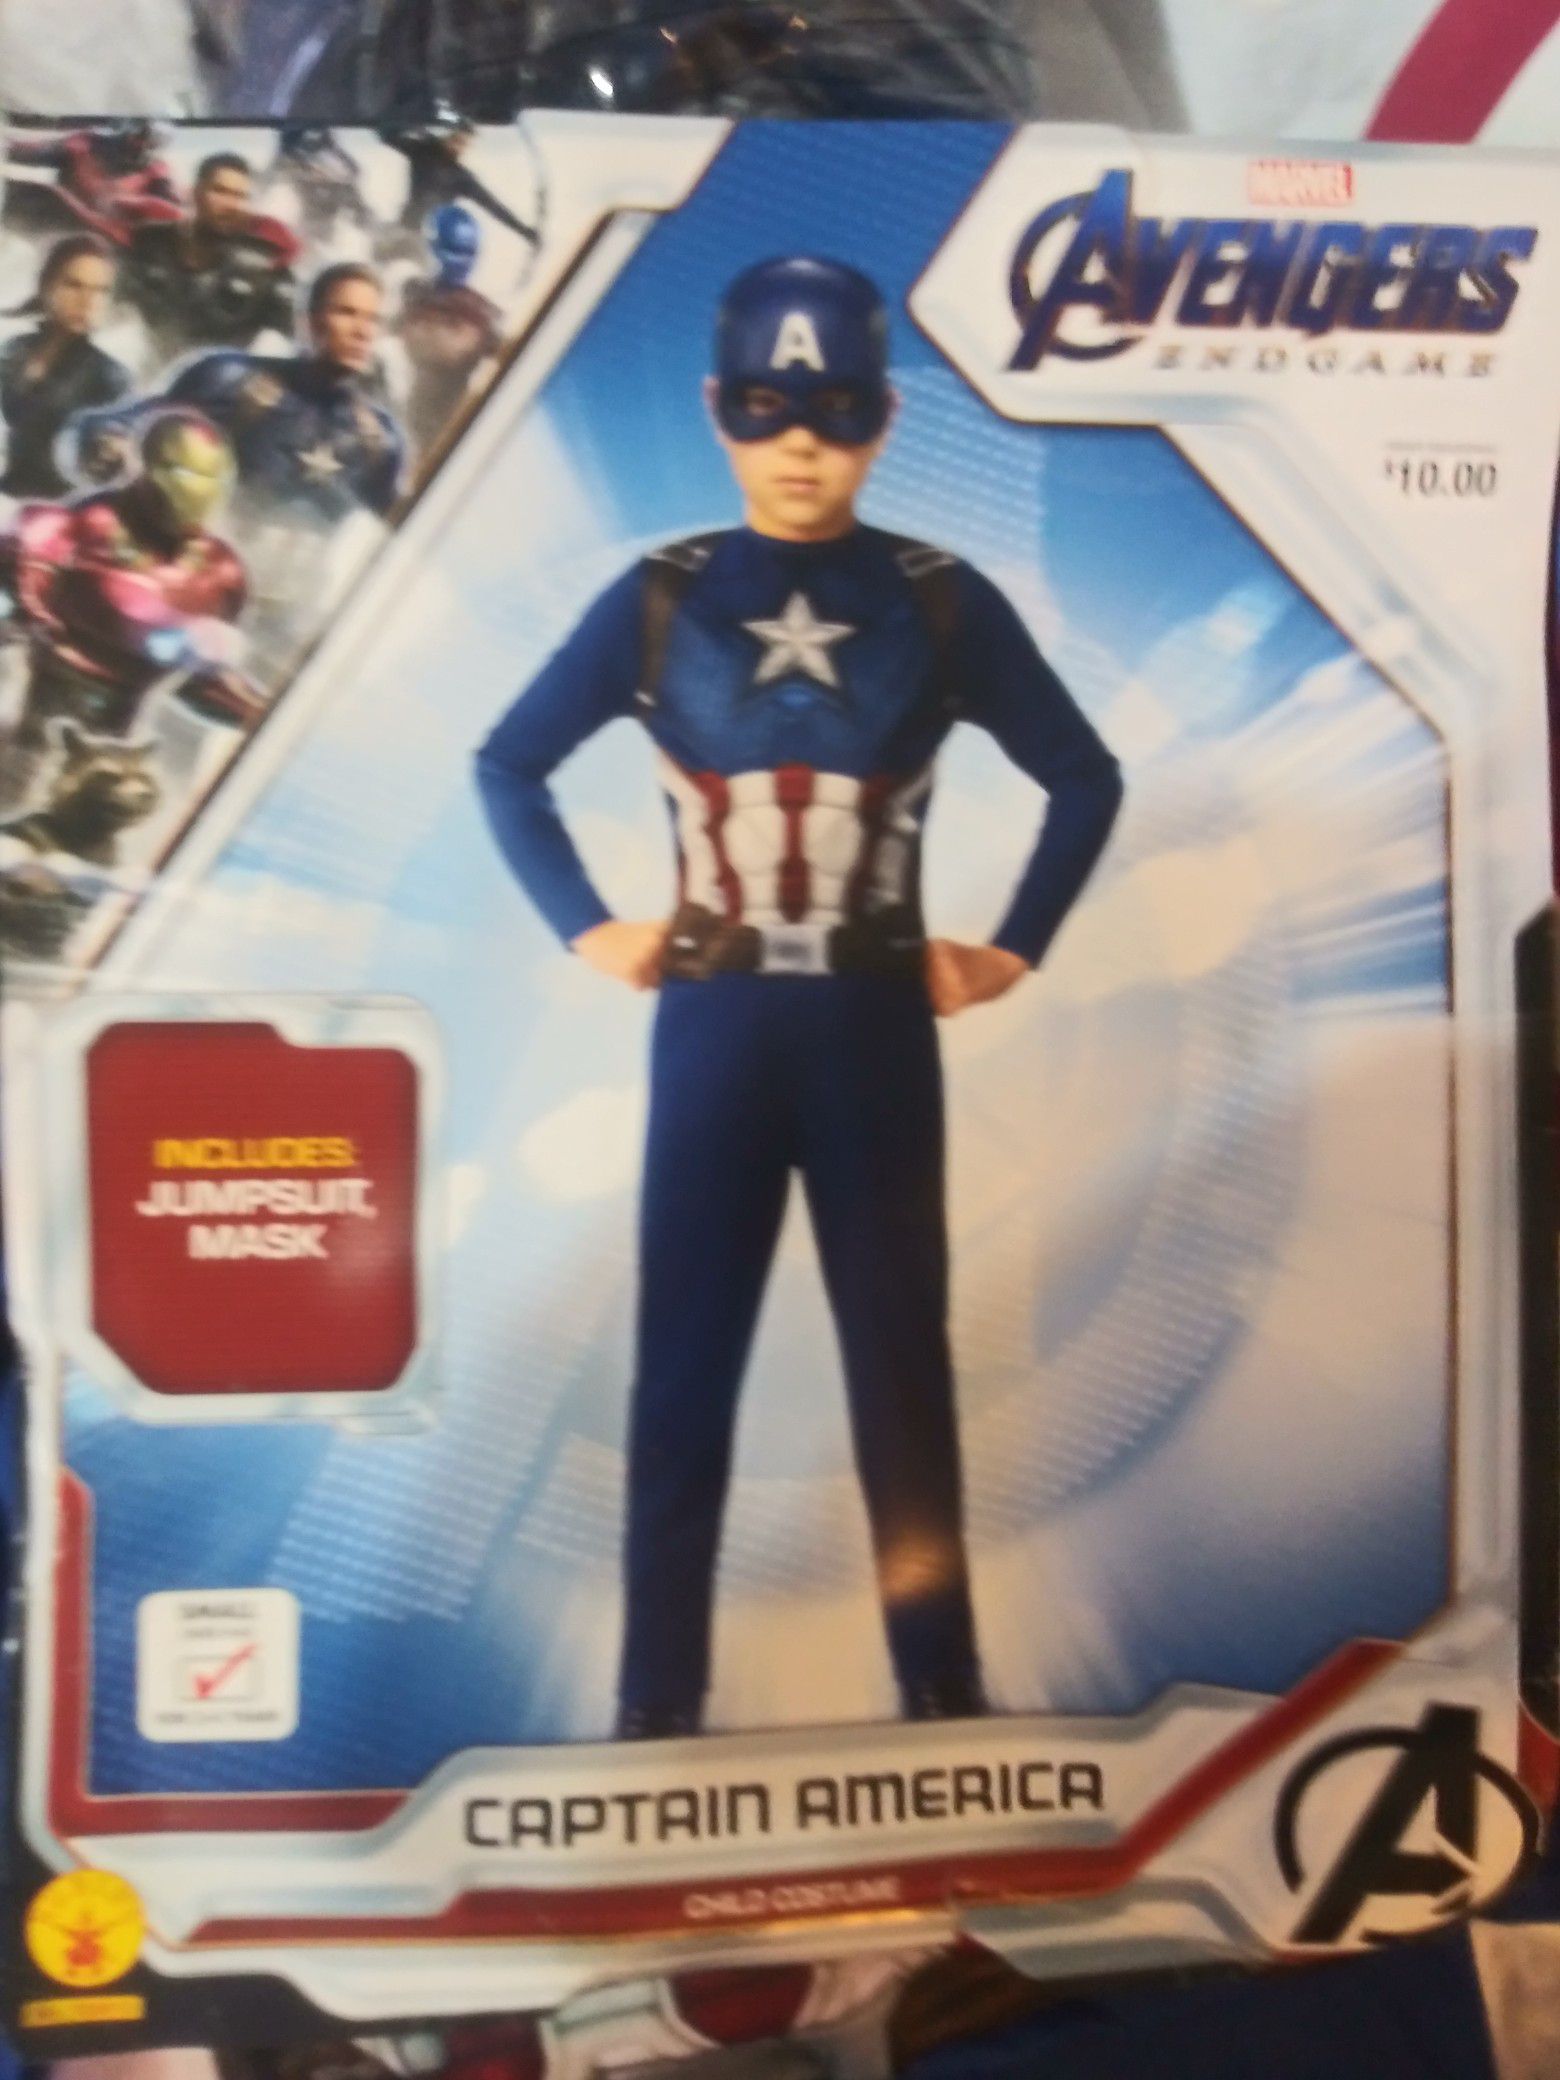 Avengers Endgame Captain America Child Costume. Kid's Size Small (4-6)